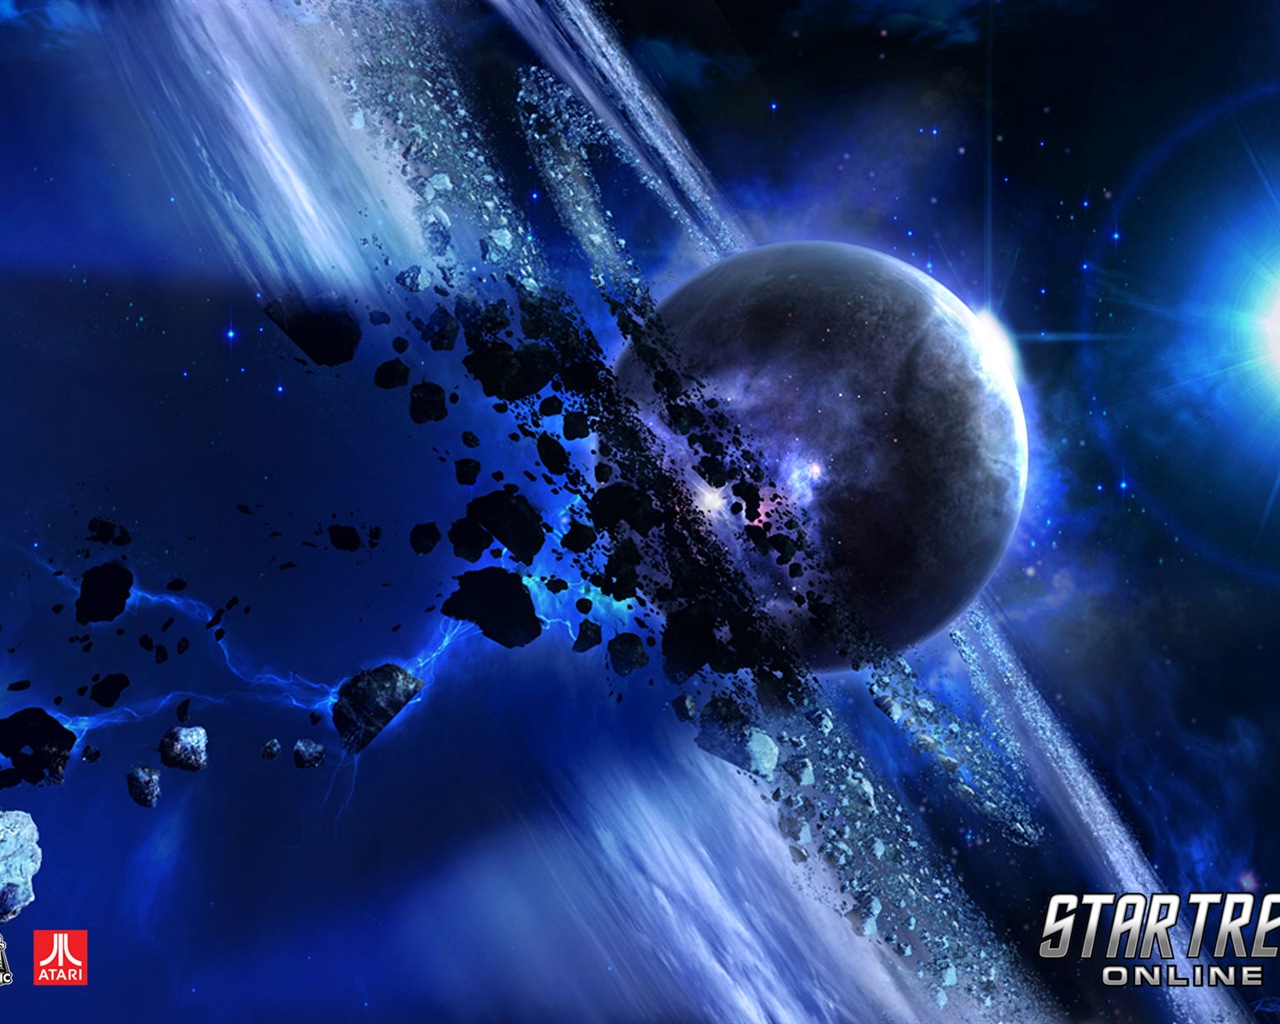 Star Trek Online 星际迷航在线 游戏高清壁纸11 - 1280x1024